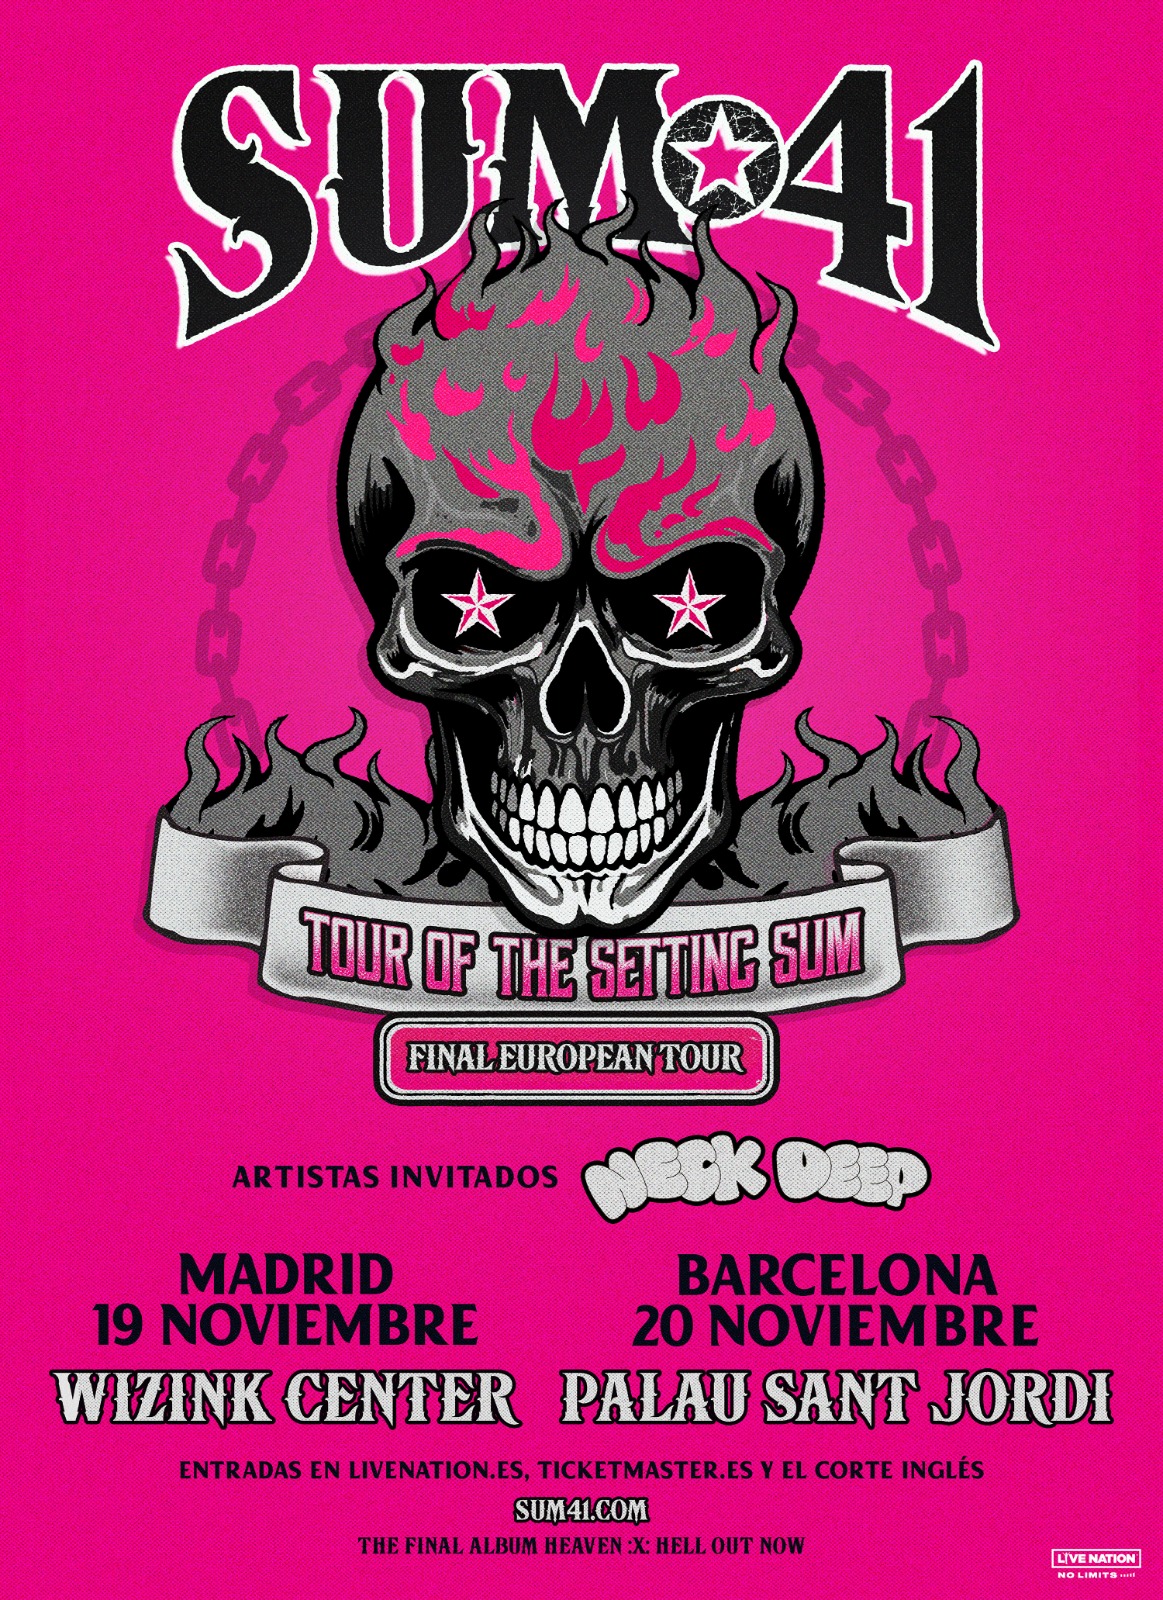 Sum 41 darán dos últimos conciertos en España dentro de su gira de despedida, en noviembre en Madrid y Barcelona